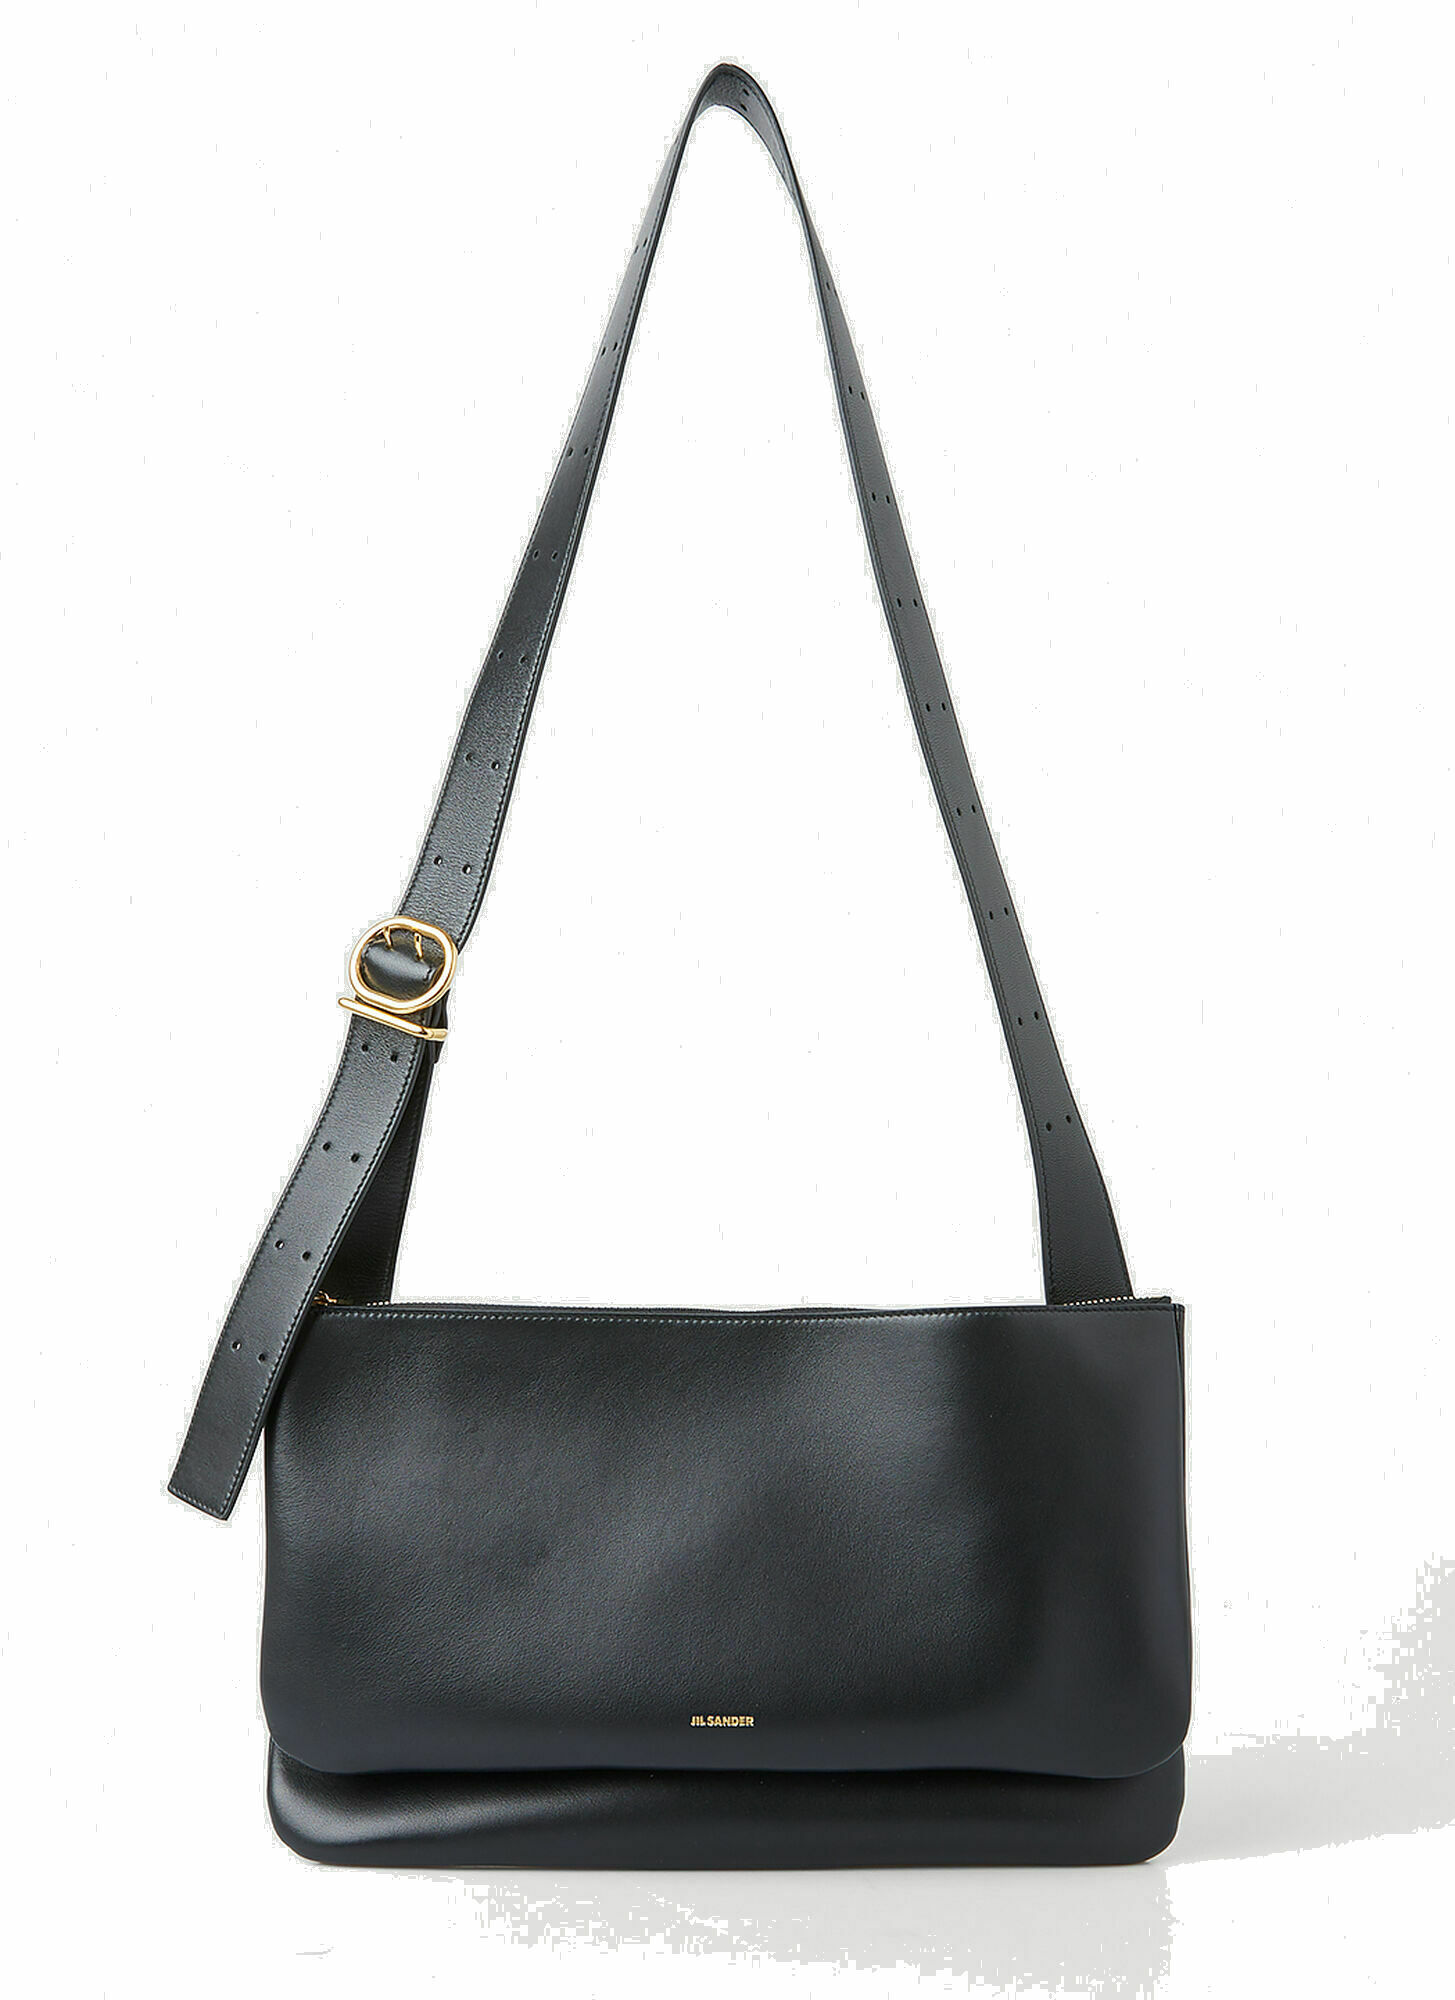 Photo: Ombra Shoulder Bag in Black